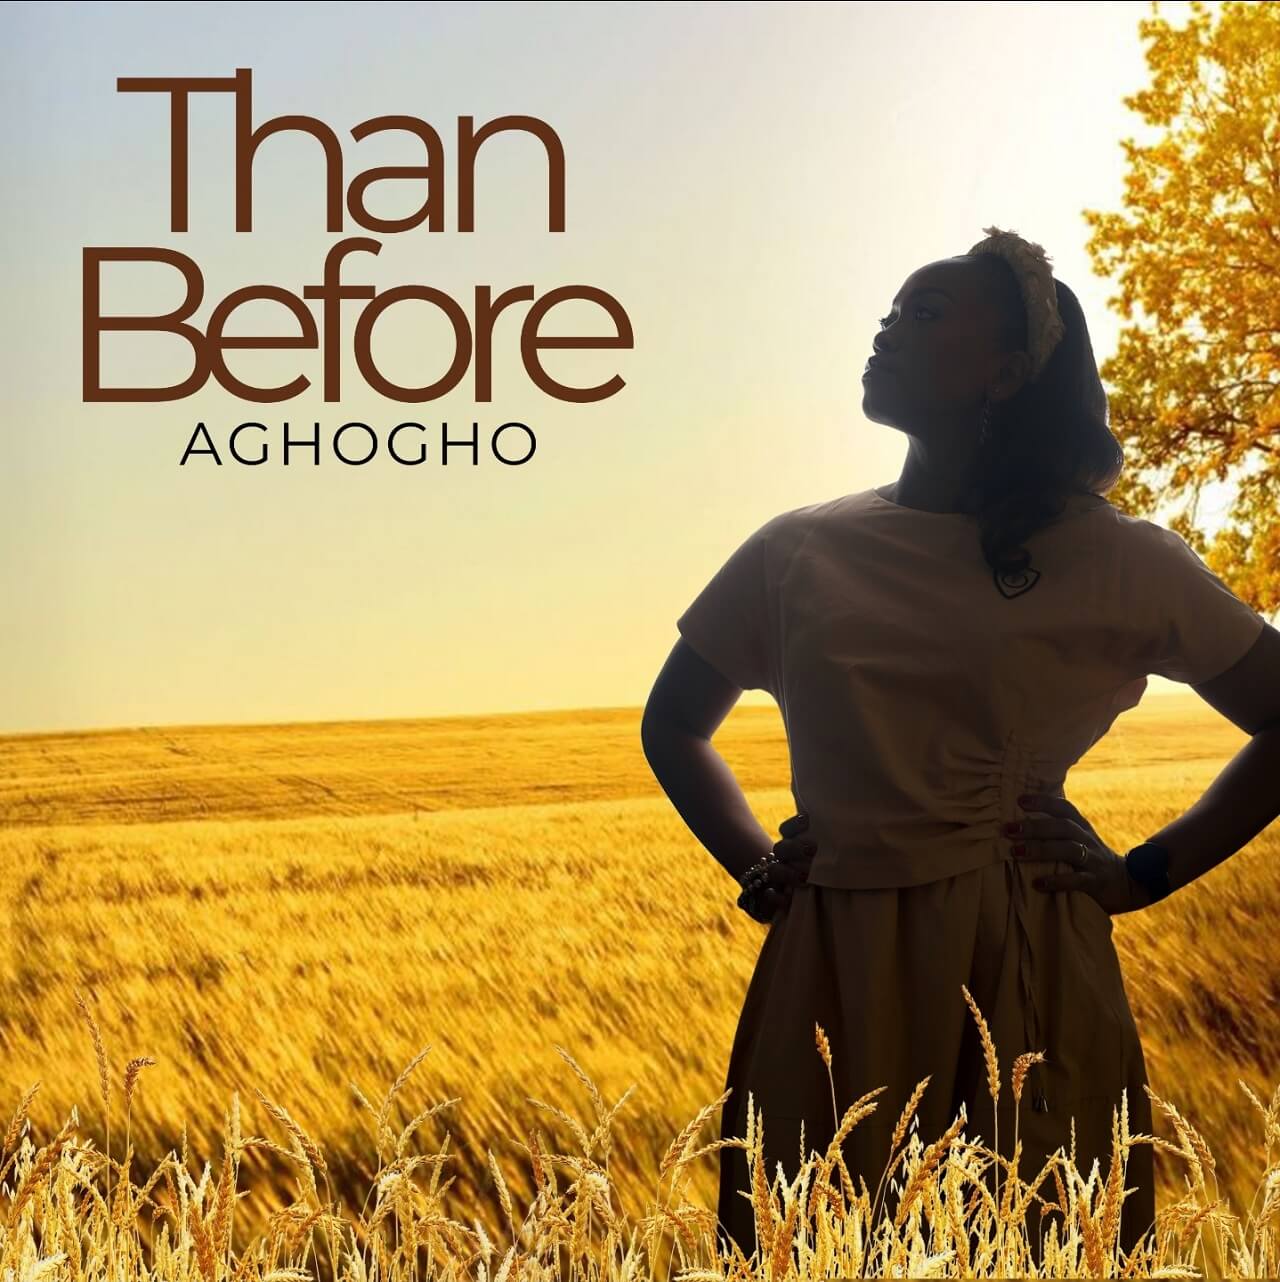 Aghogho - Than Before (Album)